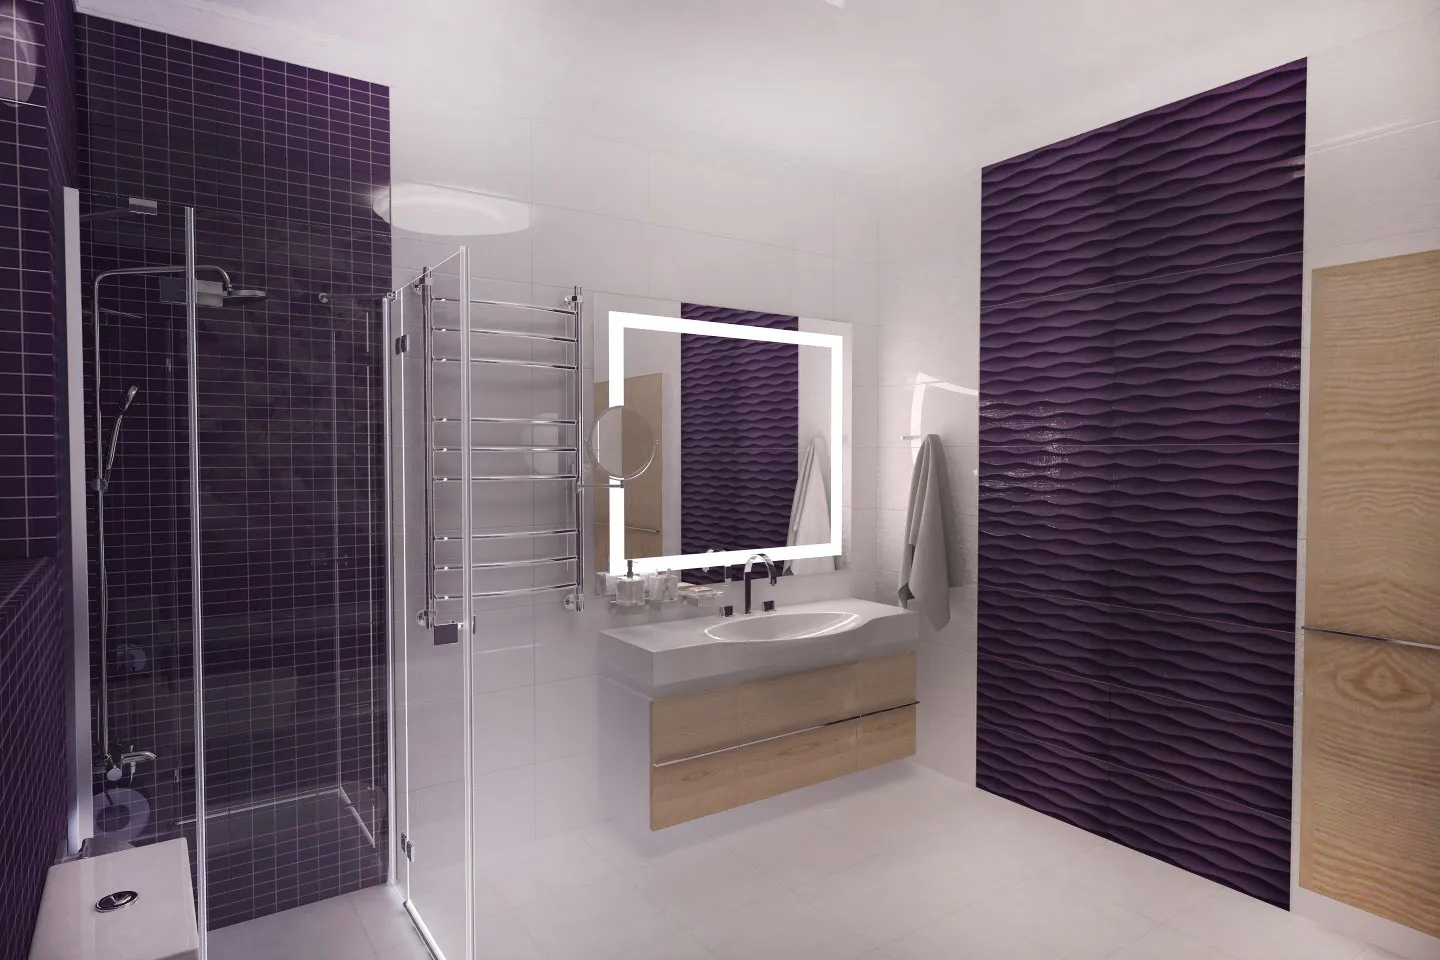 Пять оригинальных дизайн проектов сиреневой ванной комнаты